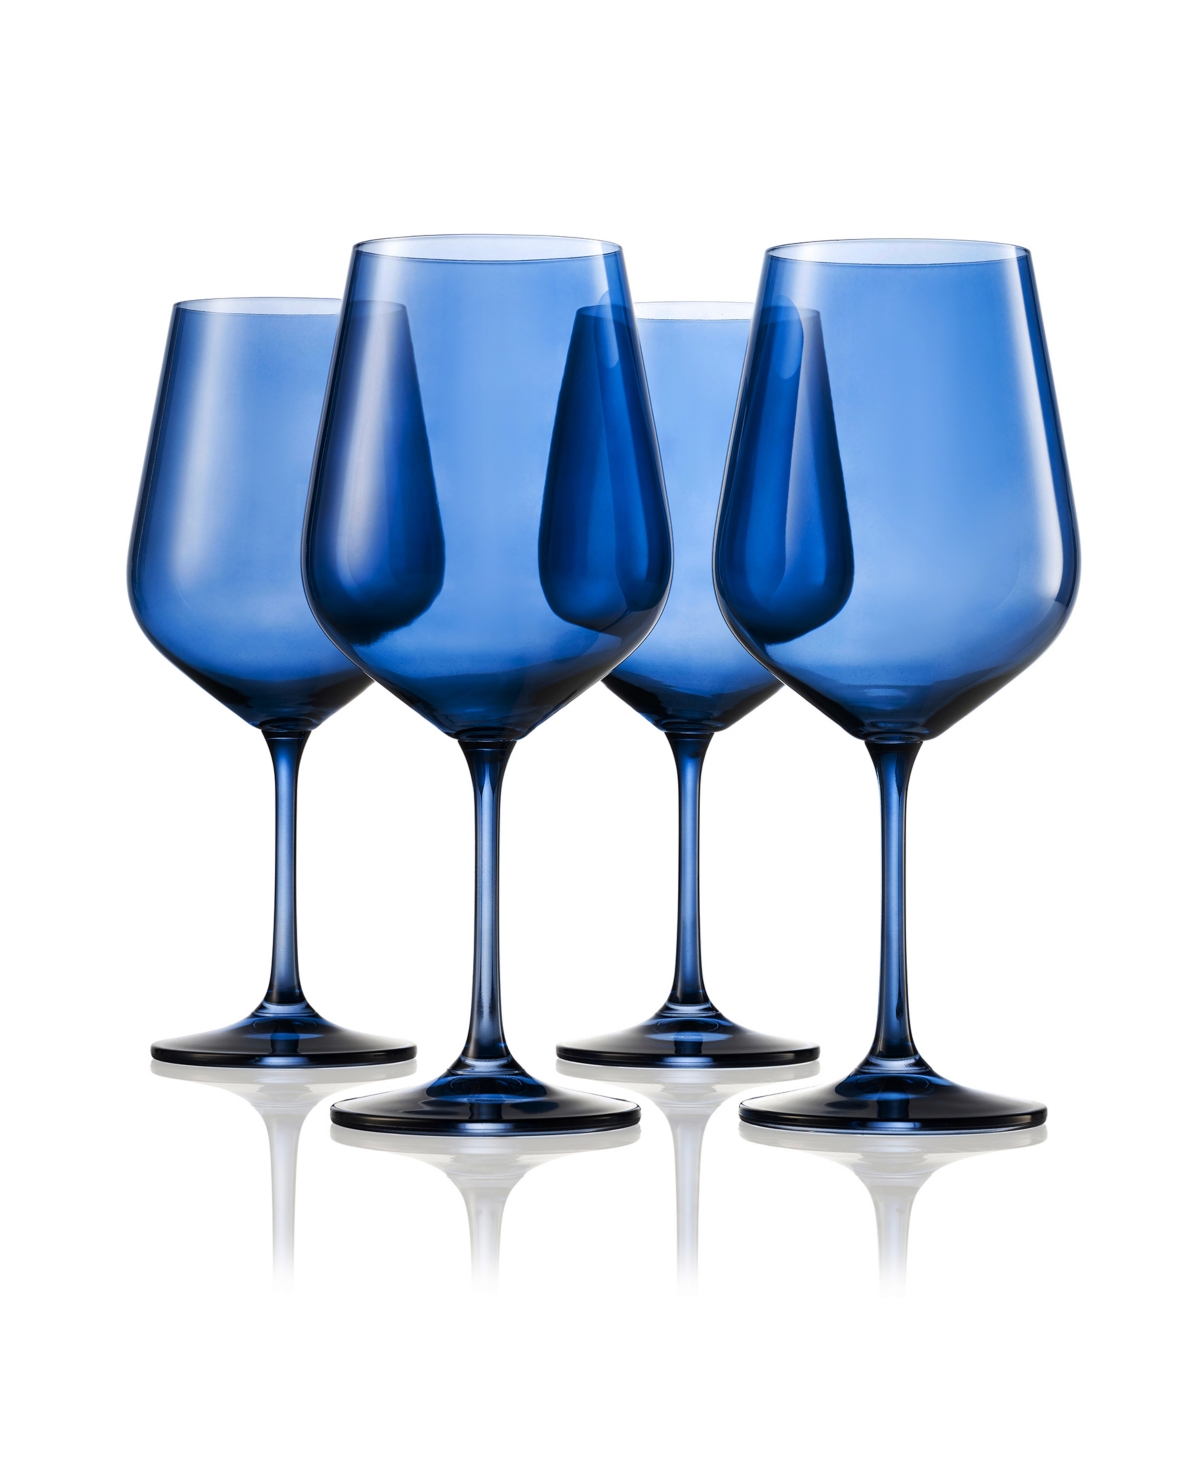 Godinger Sheer Stemmed Wine Glasses, Set Of 4 In Navy